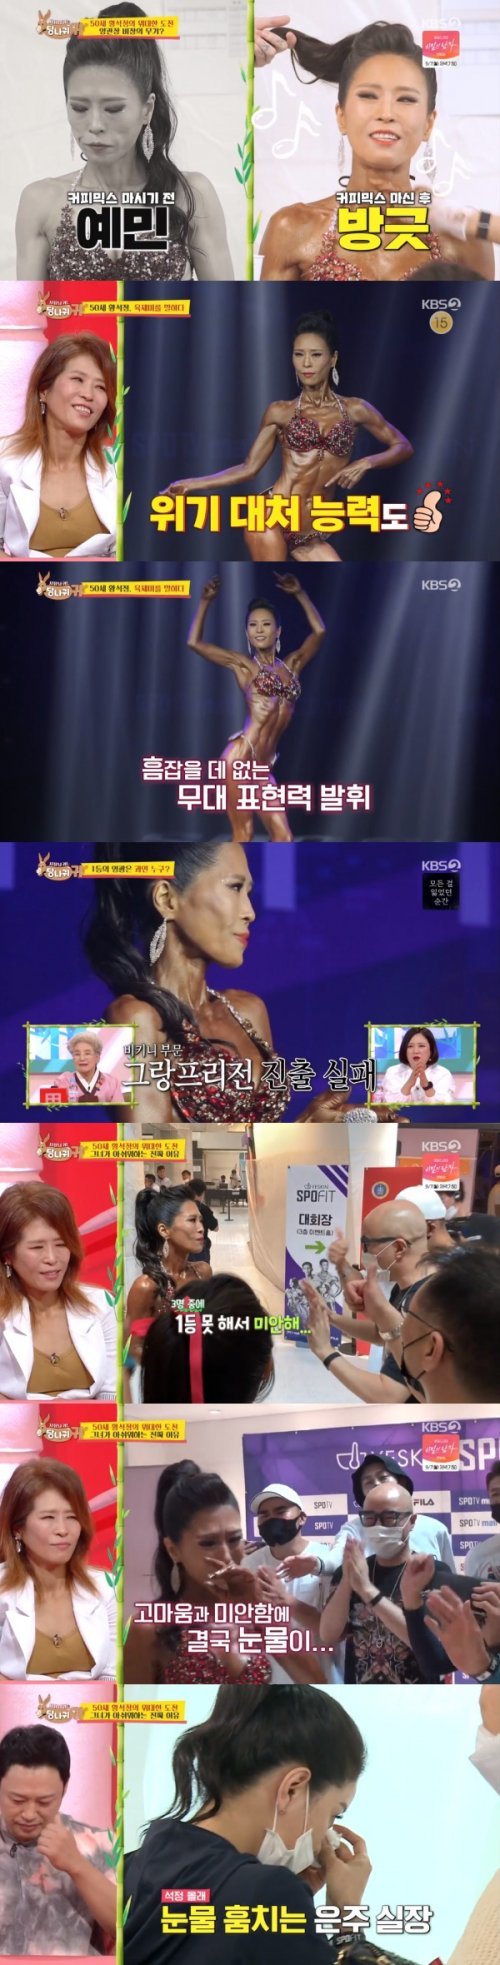 KBS 2TV ‘사장님 귀는 당나귀 귀’© 뉴스1